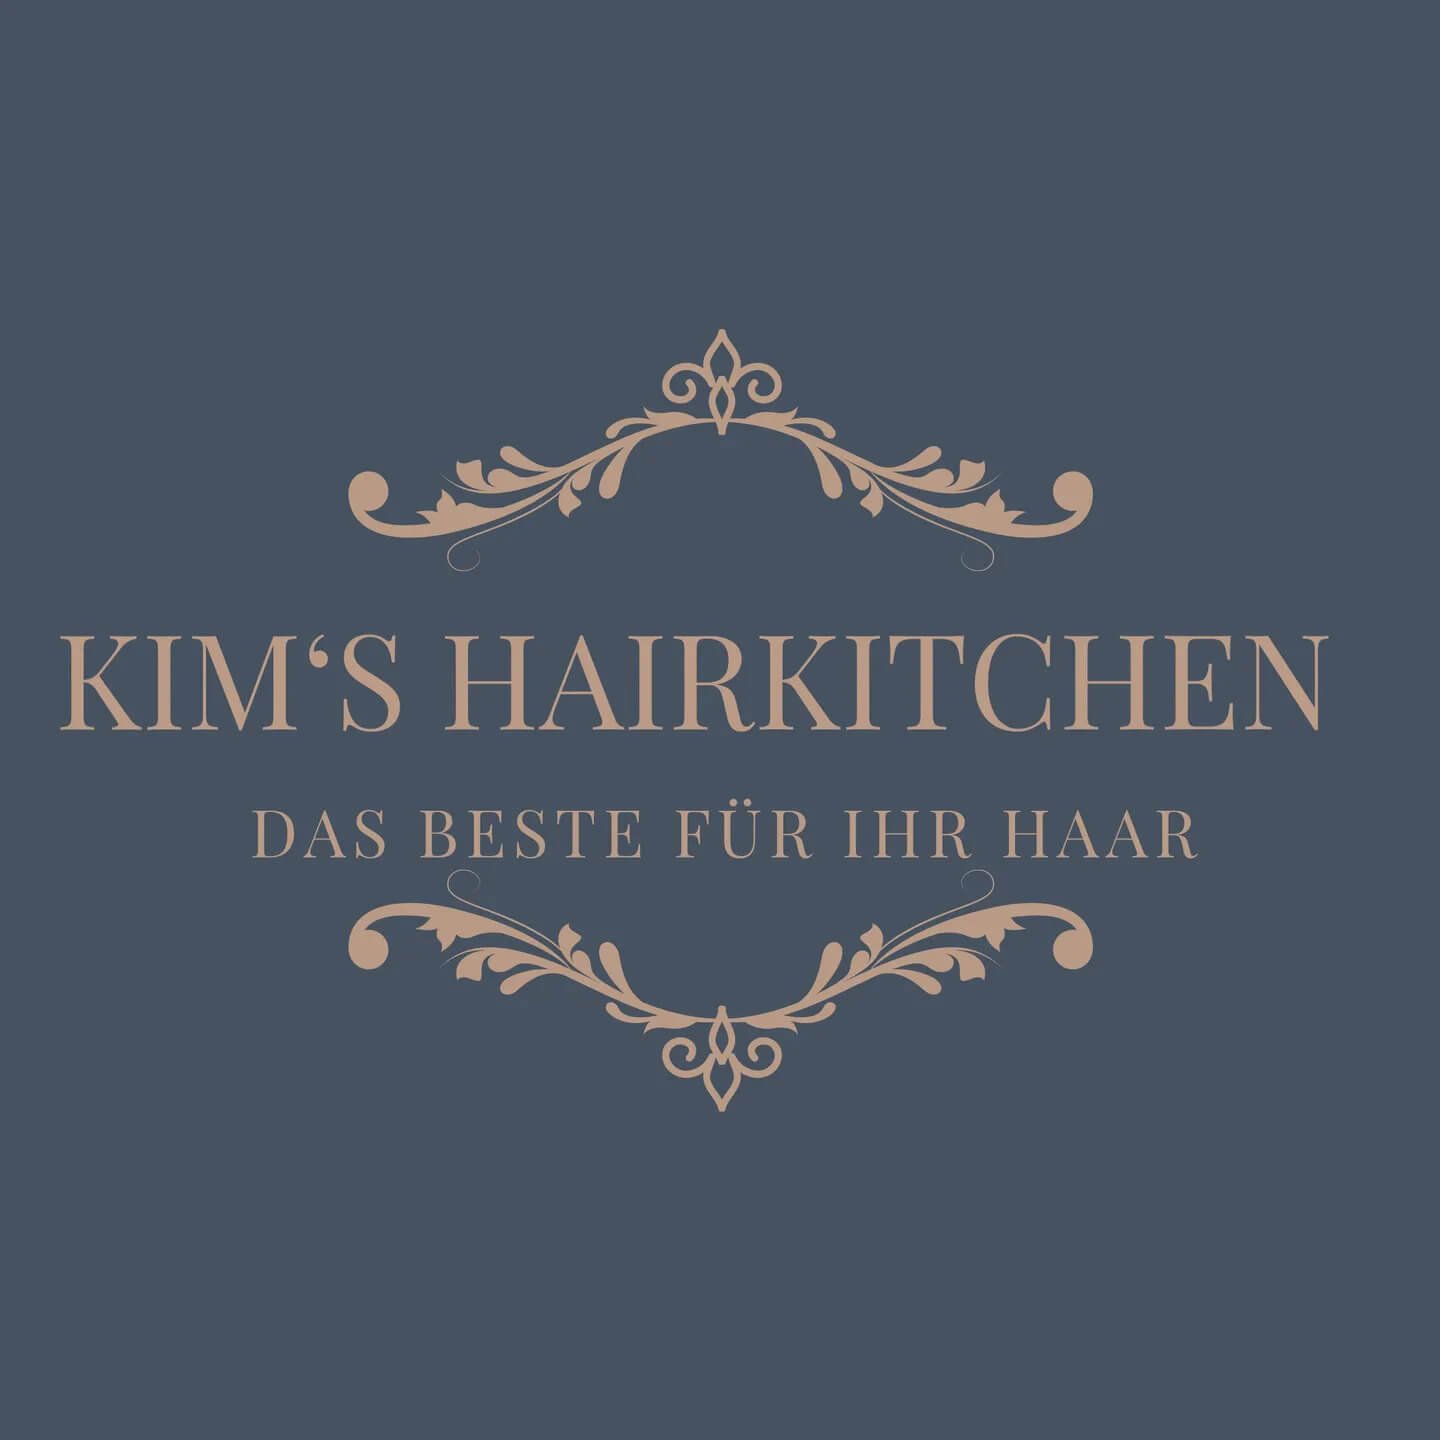 Kim's HairKitchen